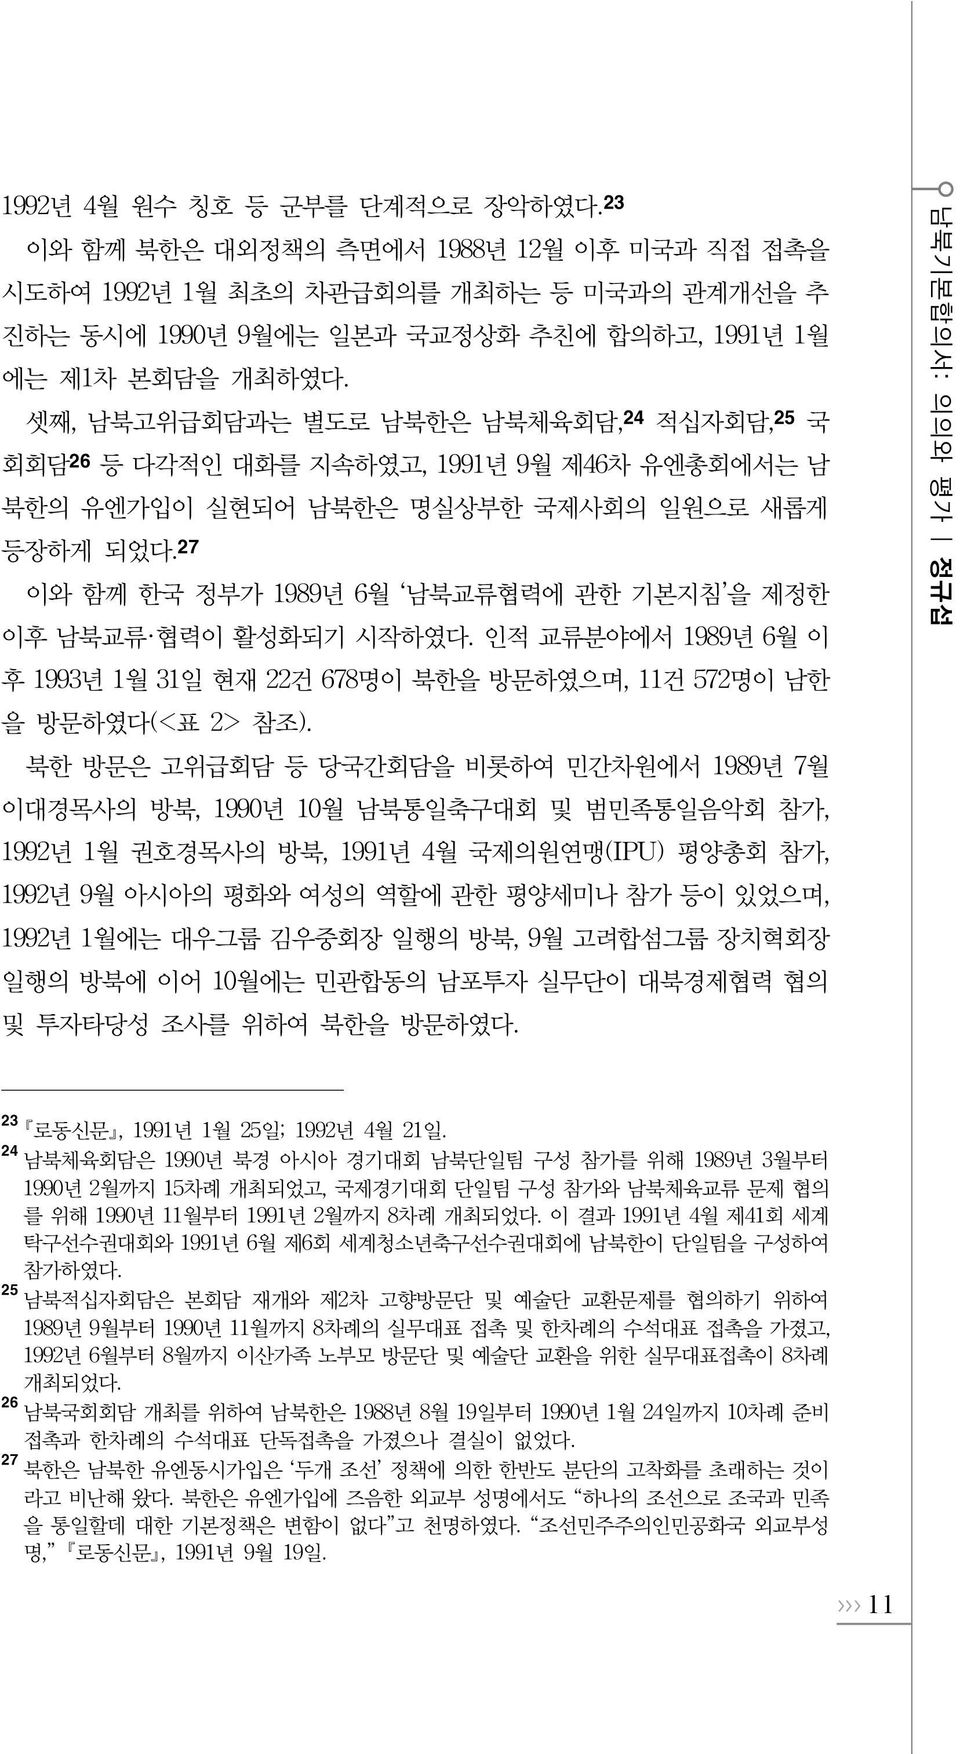 27 이와 함께 한국 정부가 1989년 6월 남북교류협력에 관한 기본지침 을 제정한 이후 남북교류 협력이 활성화되기 시작하였다. 인적 교류분야에서 1989년 6월 이 후 1993년 1월 31일 현재 22건 678명이 북한을 방문하였으며, 11건 572명이 남한 을 방문하였다(<표 2> 참조).